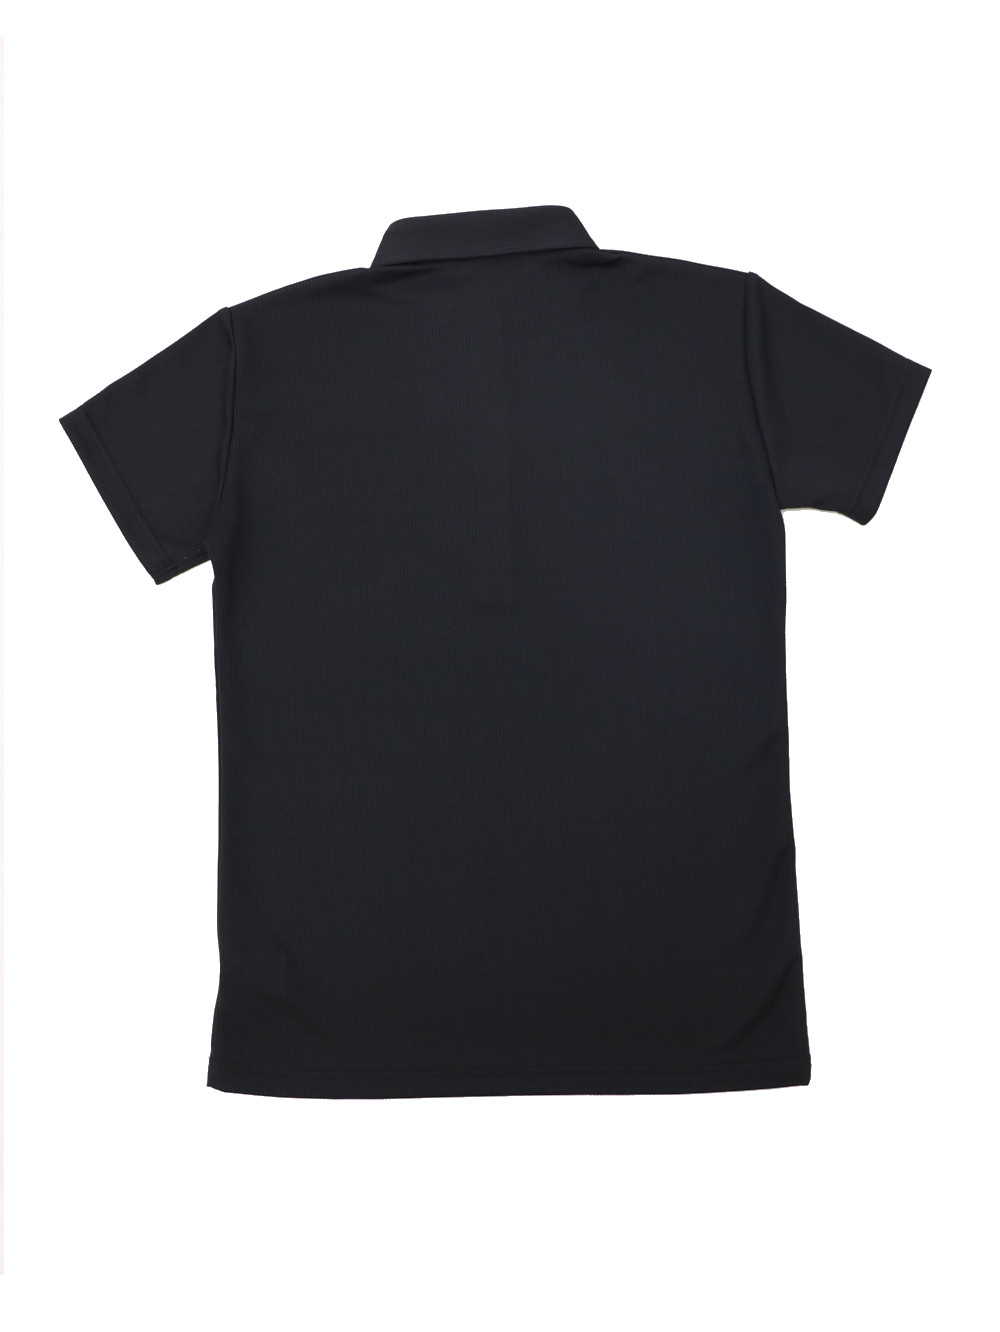 [レディース] 和柄ポロシャツ Mサイズ 黒画像